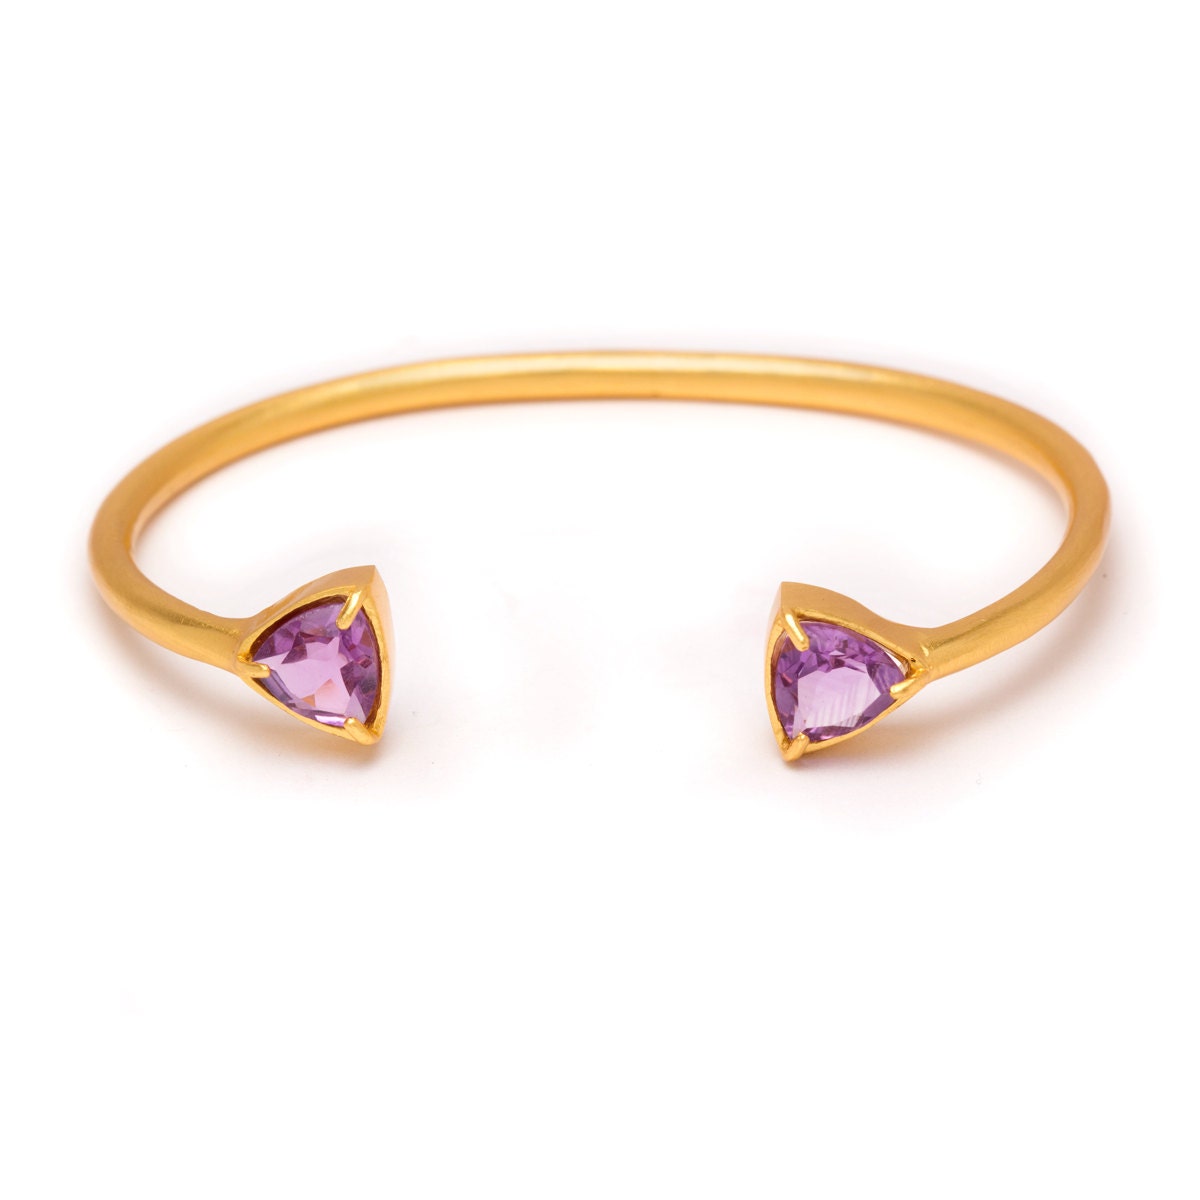 Gemstone Cuff Bracelet Gold Gemstone Bangle Amethyst Cuff